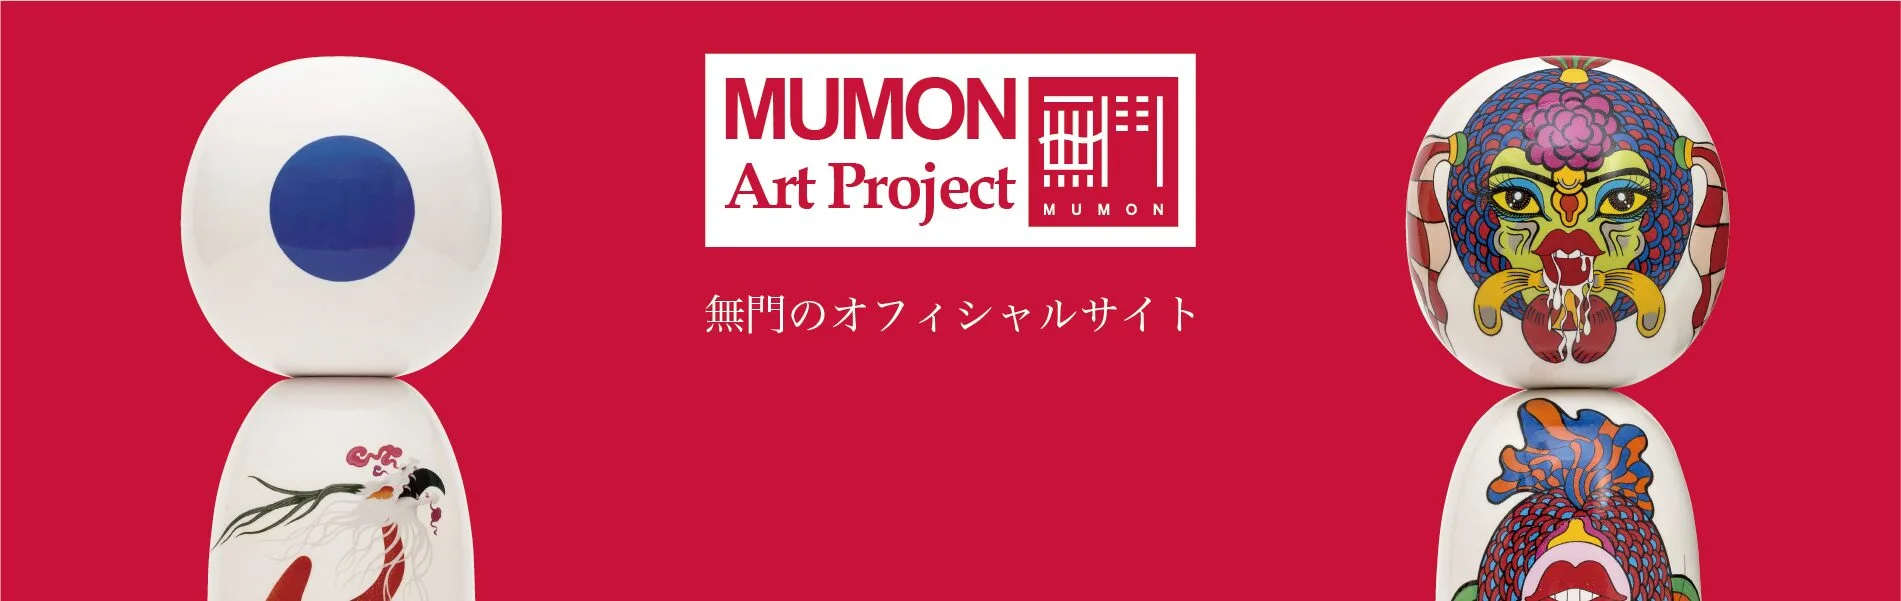 mumon official site